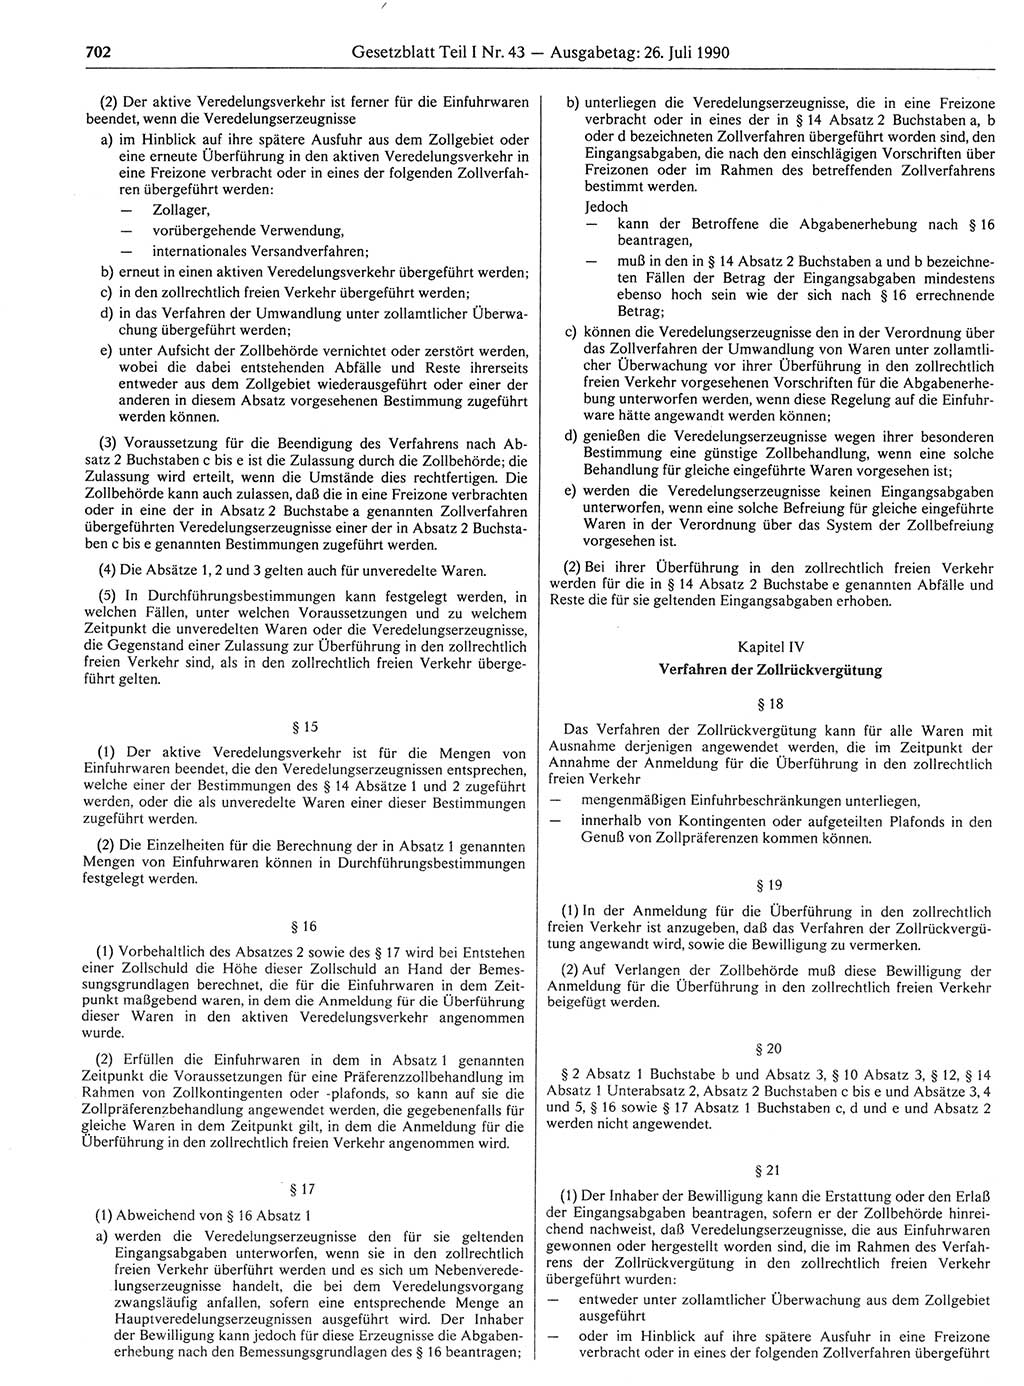 Gesetzblatt (GBl.) der Deutschen Demokratischen Republik (DDR) Teil Ⅰ 1990, Seite 702 (GBl. DDR Ⅰ 1990, S. 702)